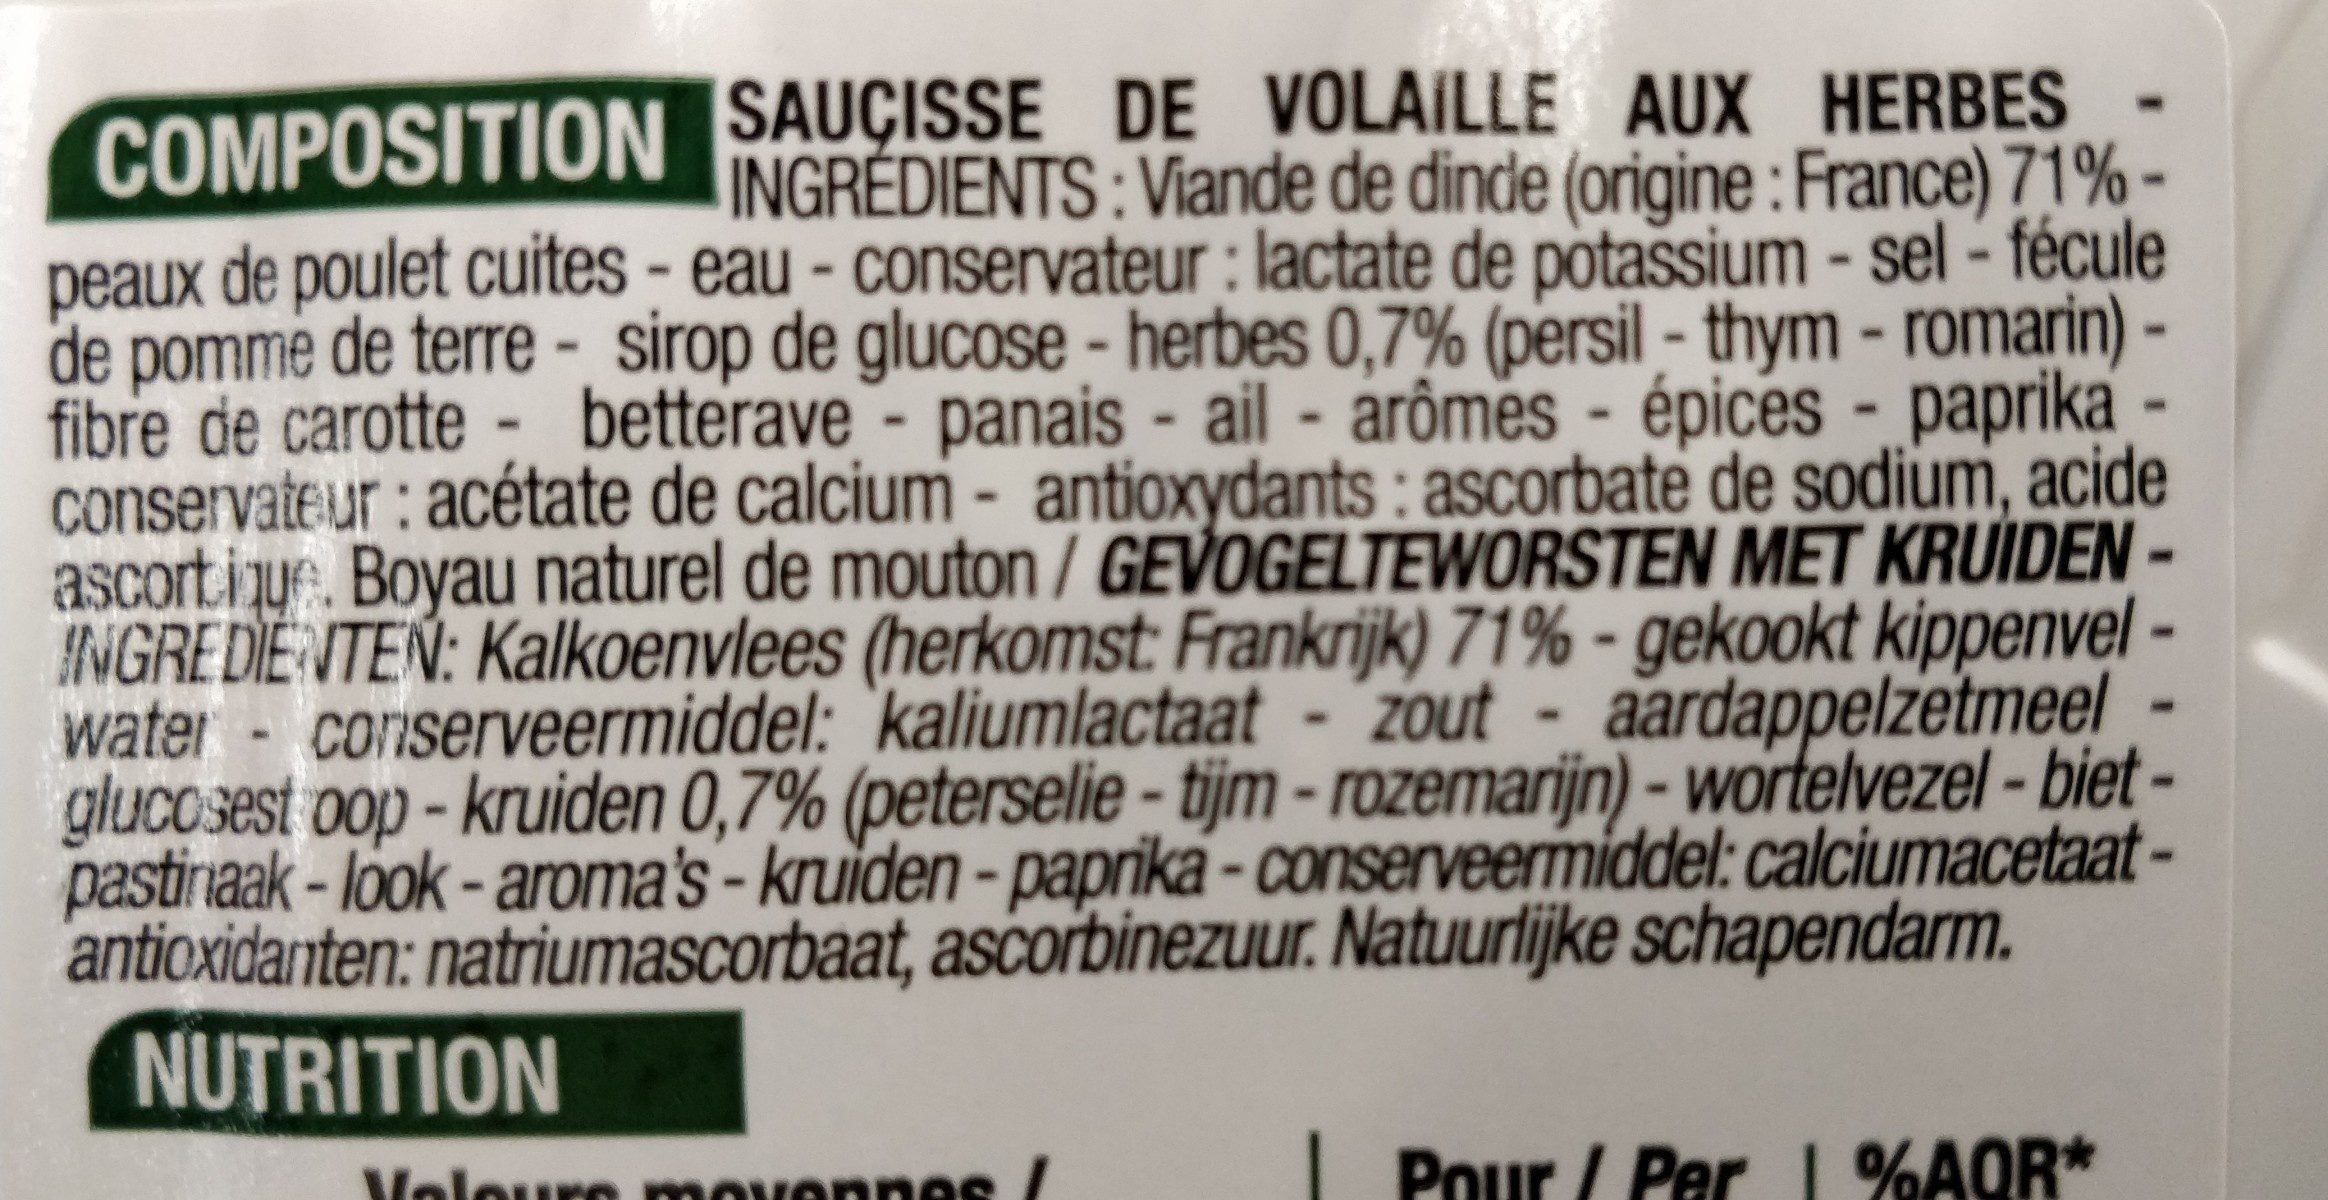 Saucisses de volaille aux herbes - Ingredients - fr